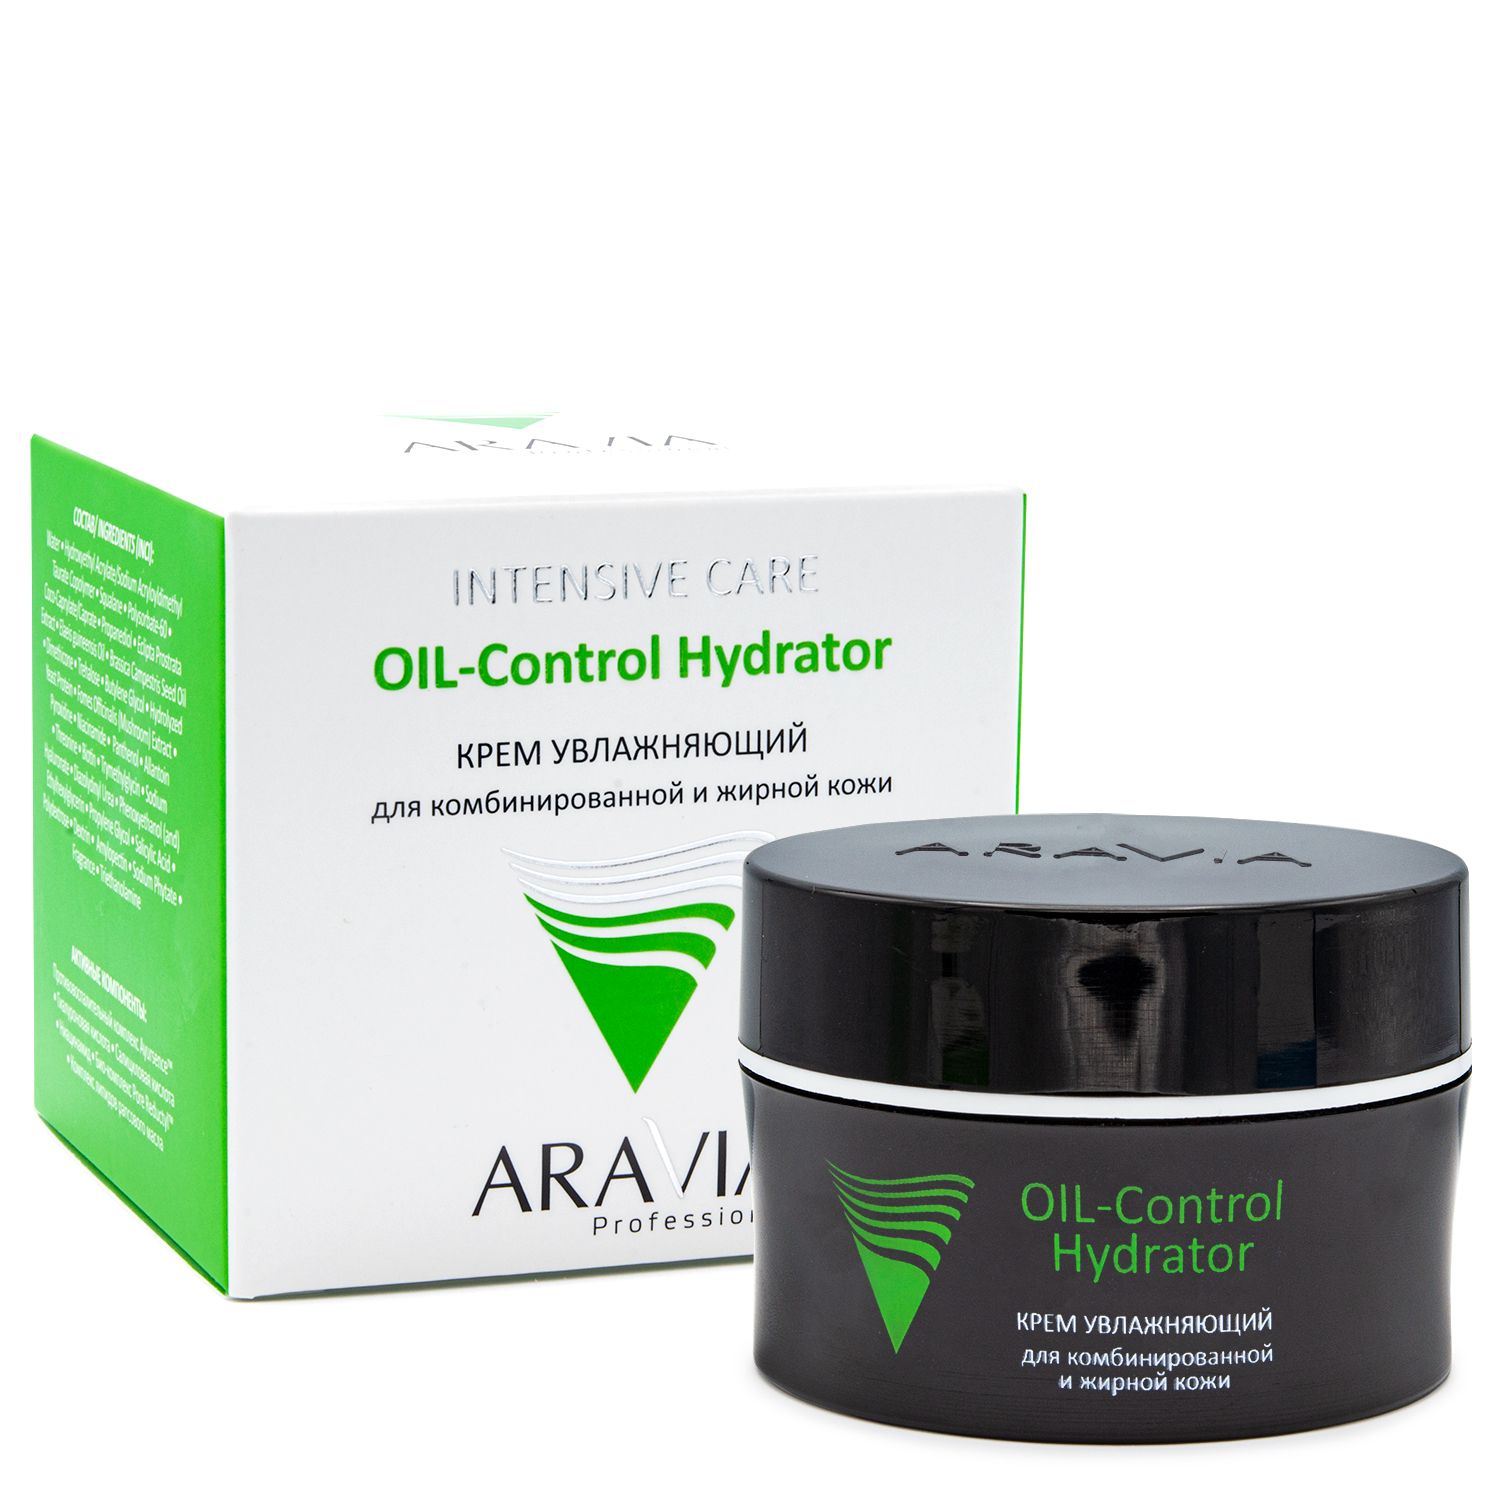 Крем увлажняющий для комбинированной и жирной кожи OIL-Control Hydrator, 50 мл, ARAVIA. 6313